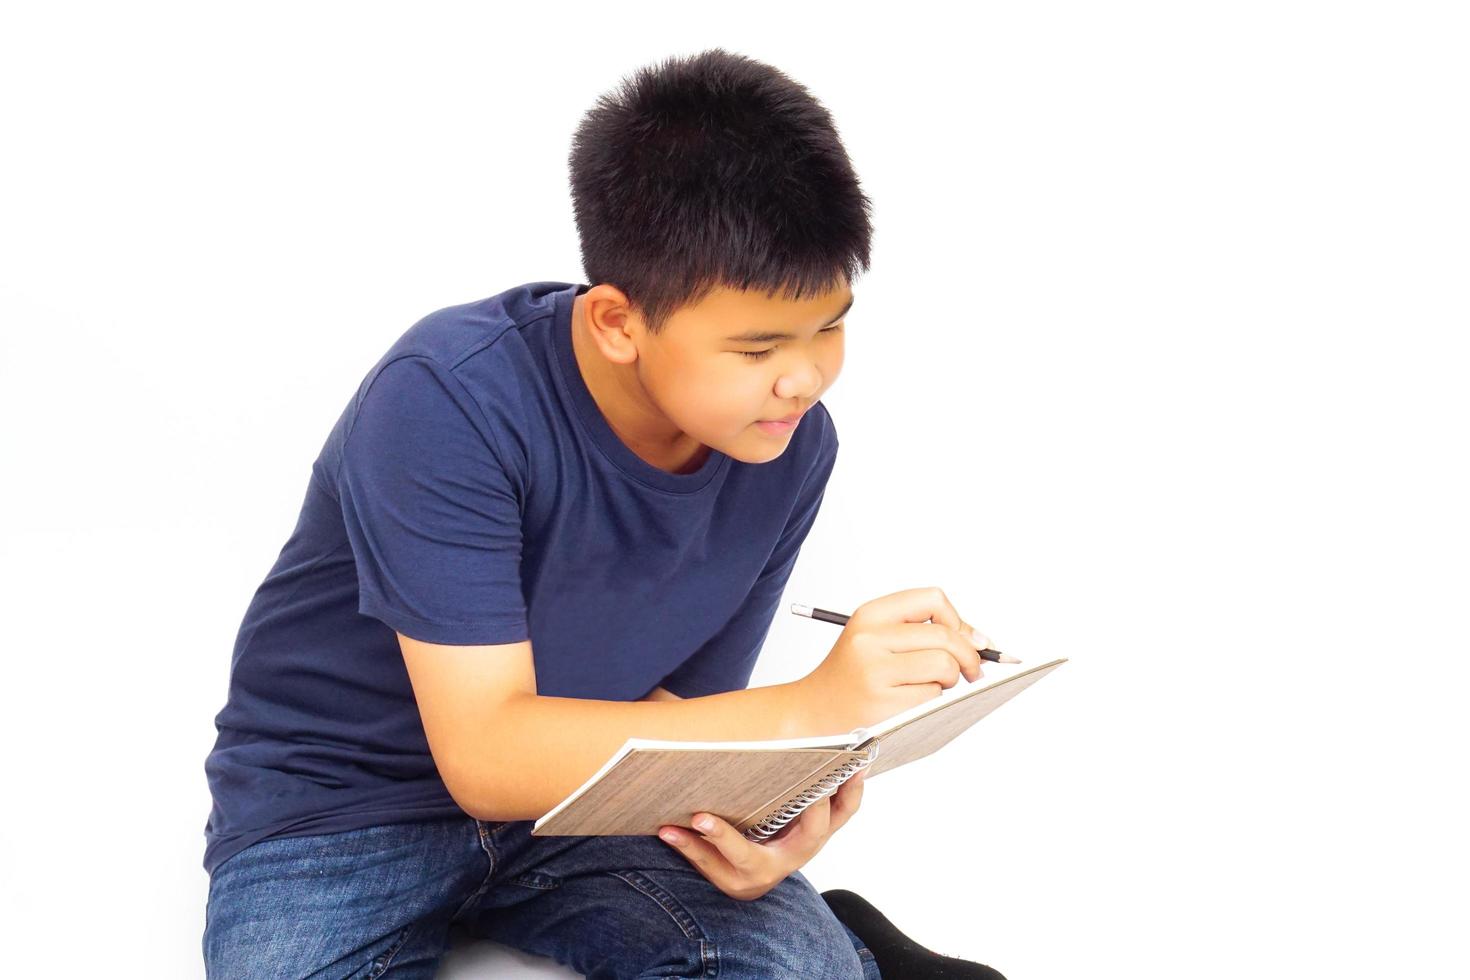 joven sentado sobre fondo blanco y escribiendo un libro. concepto de educación y aprendizaje. foto